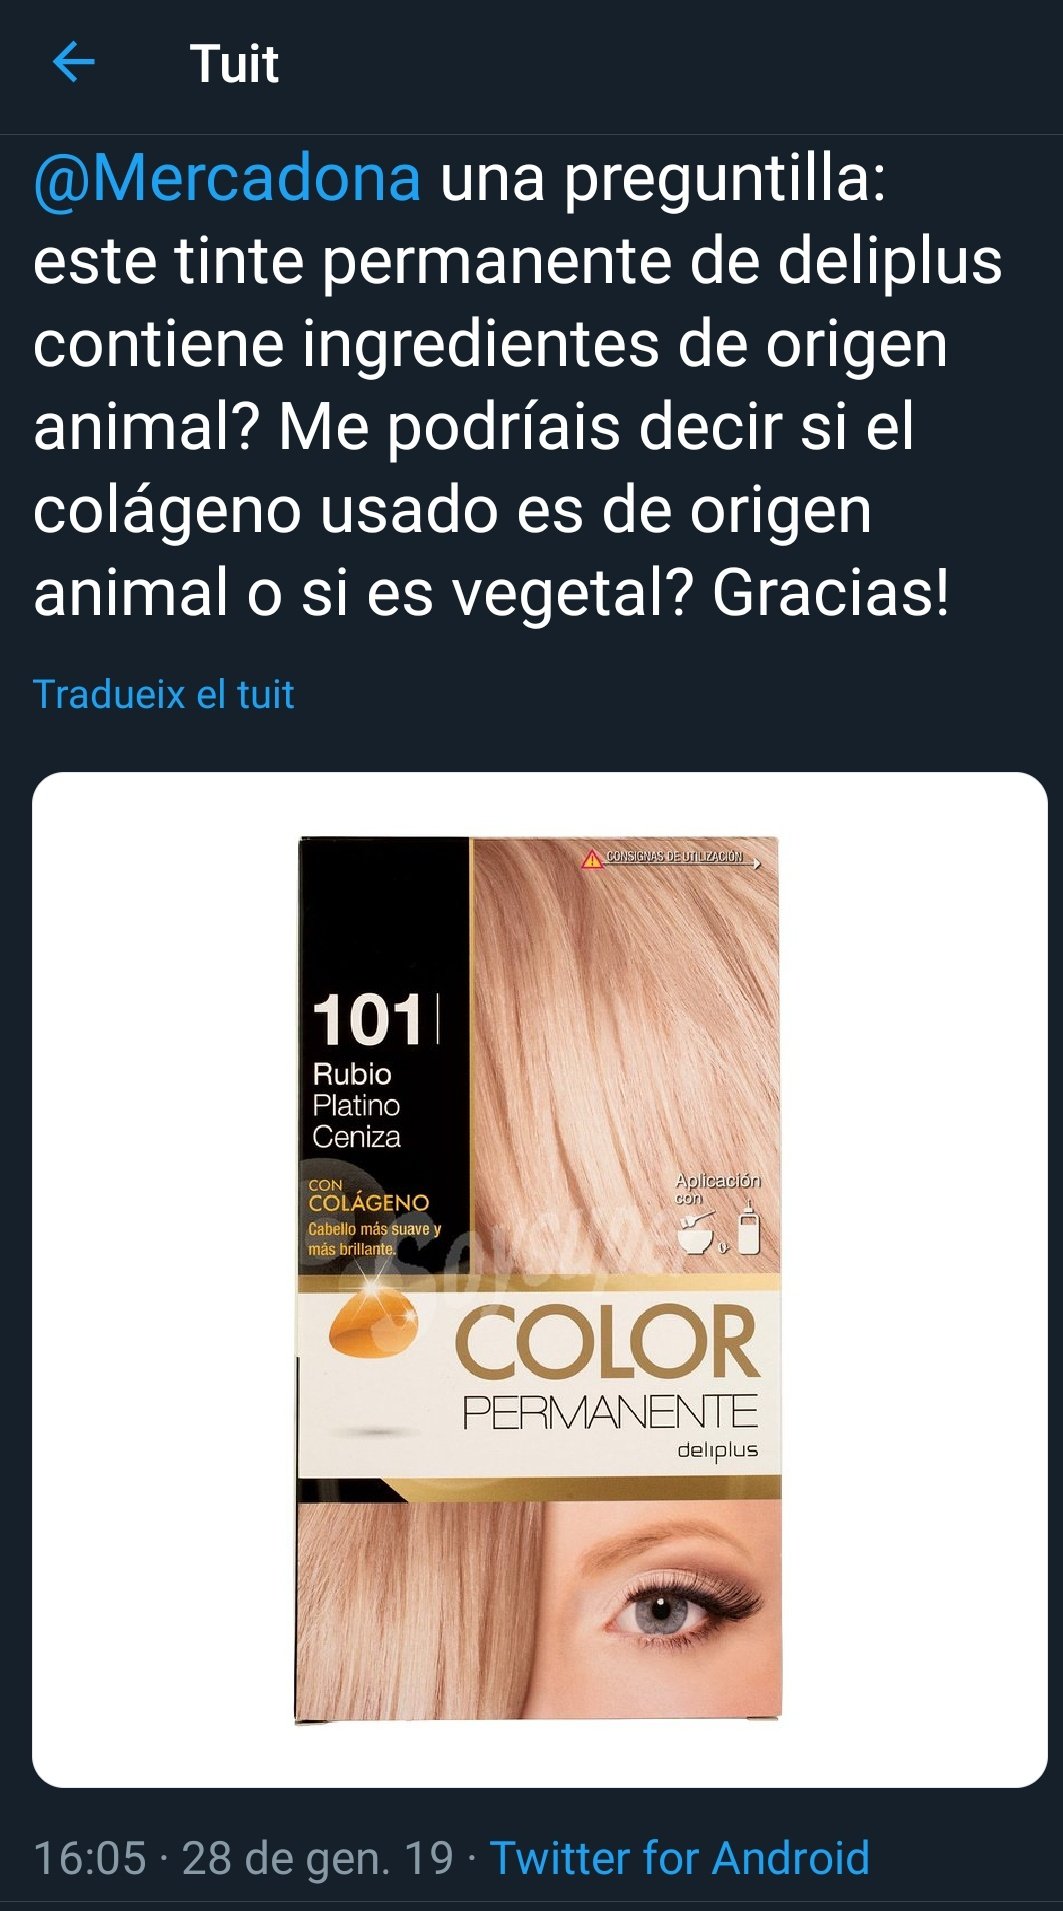 Custodio Perth Blackborough artería Veganoyo 🌱 on Twitter: "#VeggieRespuestas El tinte permanente de color  rubio, de la marca Deliplus, contiene colágeno de origen animal.  https://t.co/FMiAGNO7lo" / Twitter